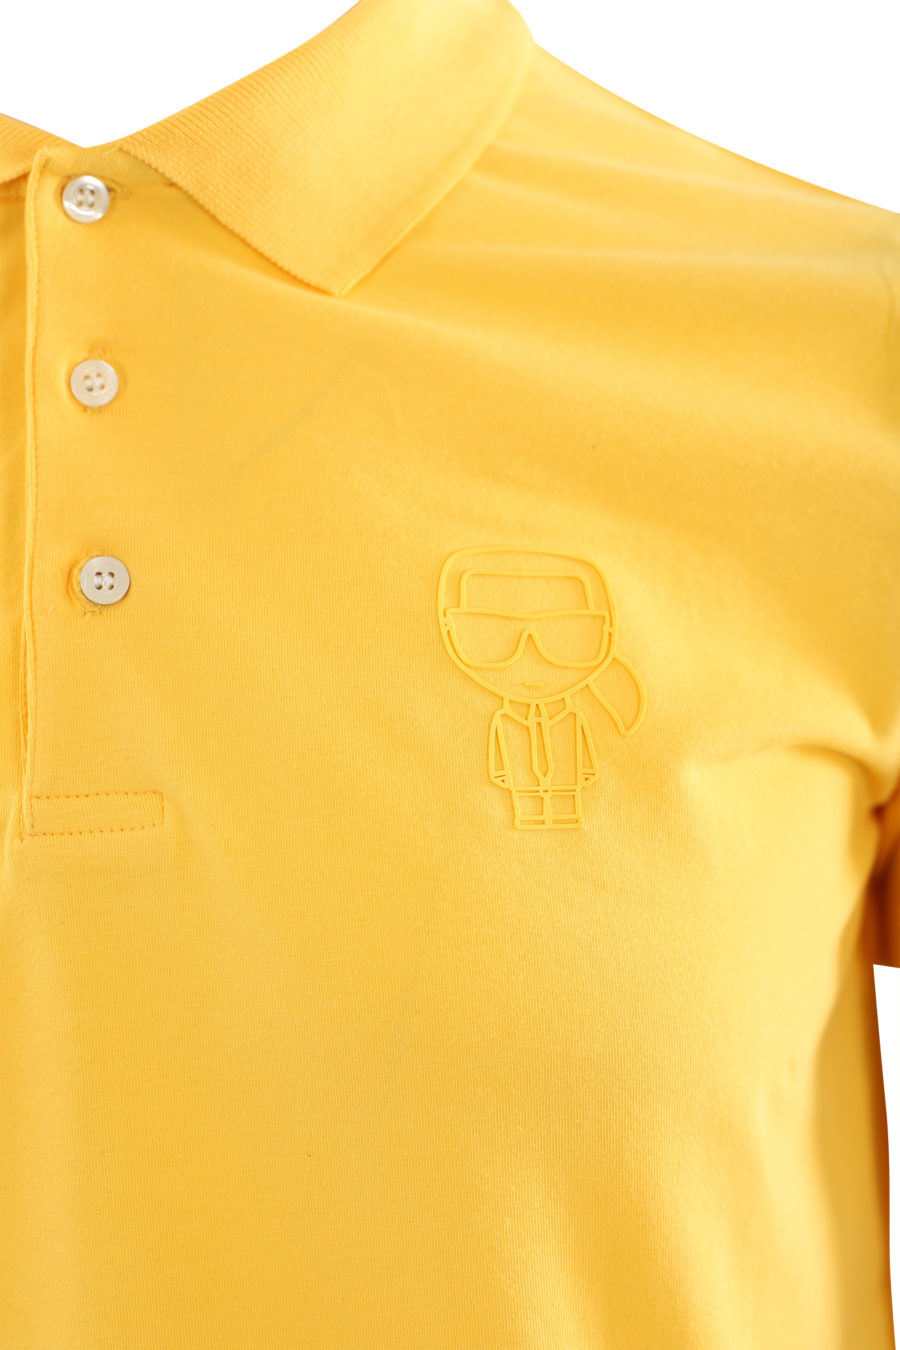 Polo amarillo con logo de goma - IMG 6505